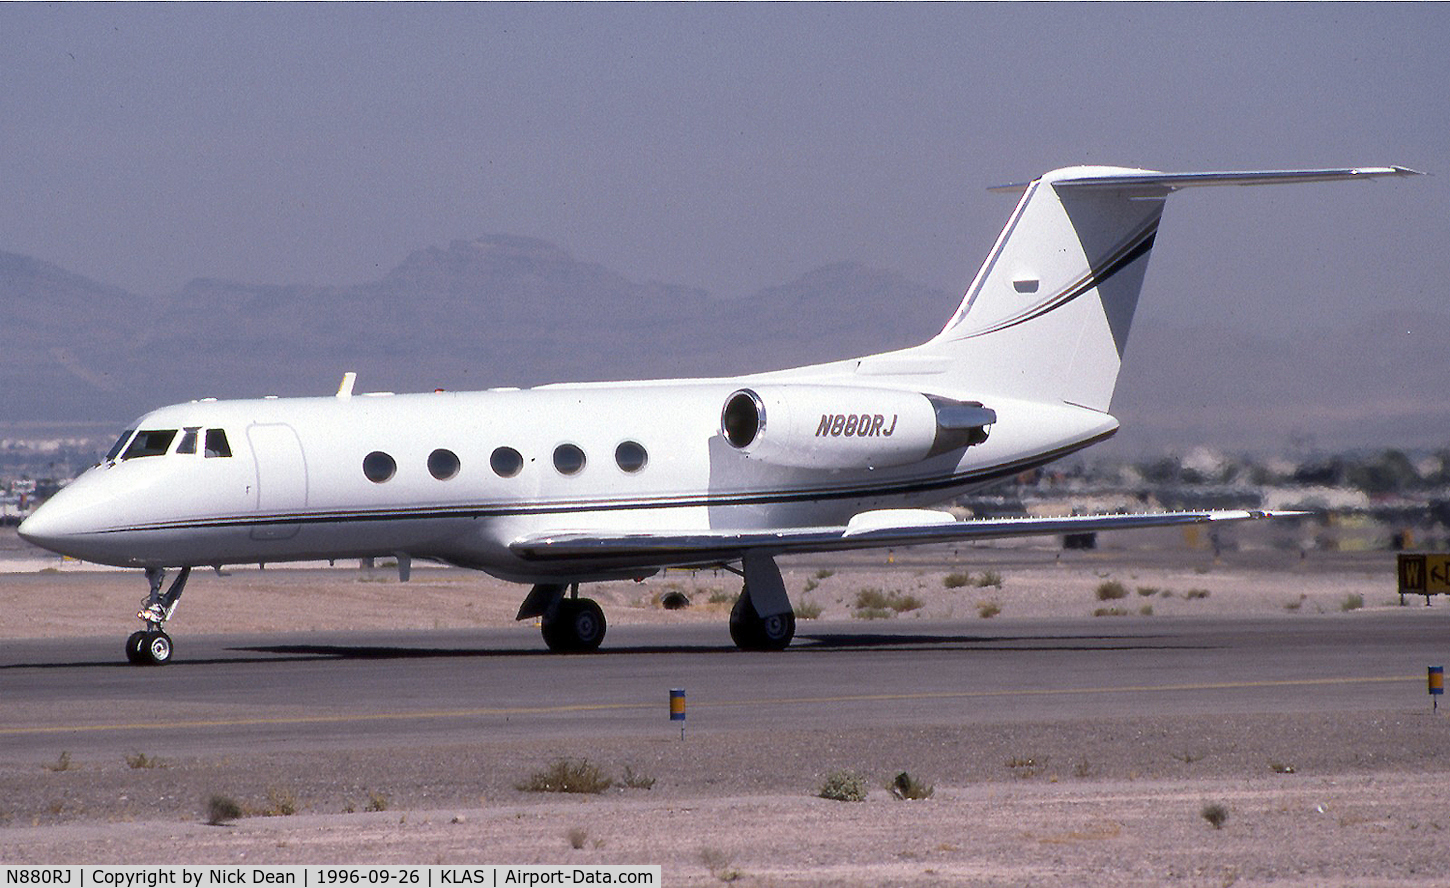 N880RJ, 1974 Grumman G-1159 Gulfstream II C/N 159, KLAS